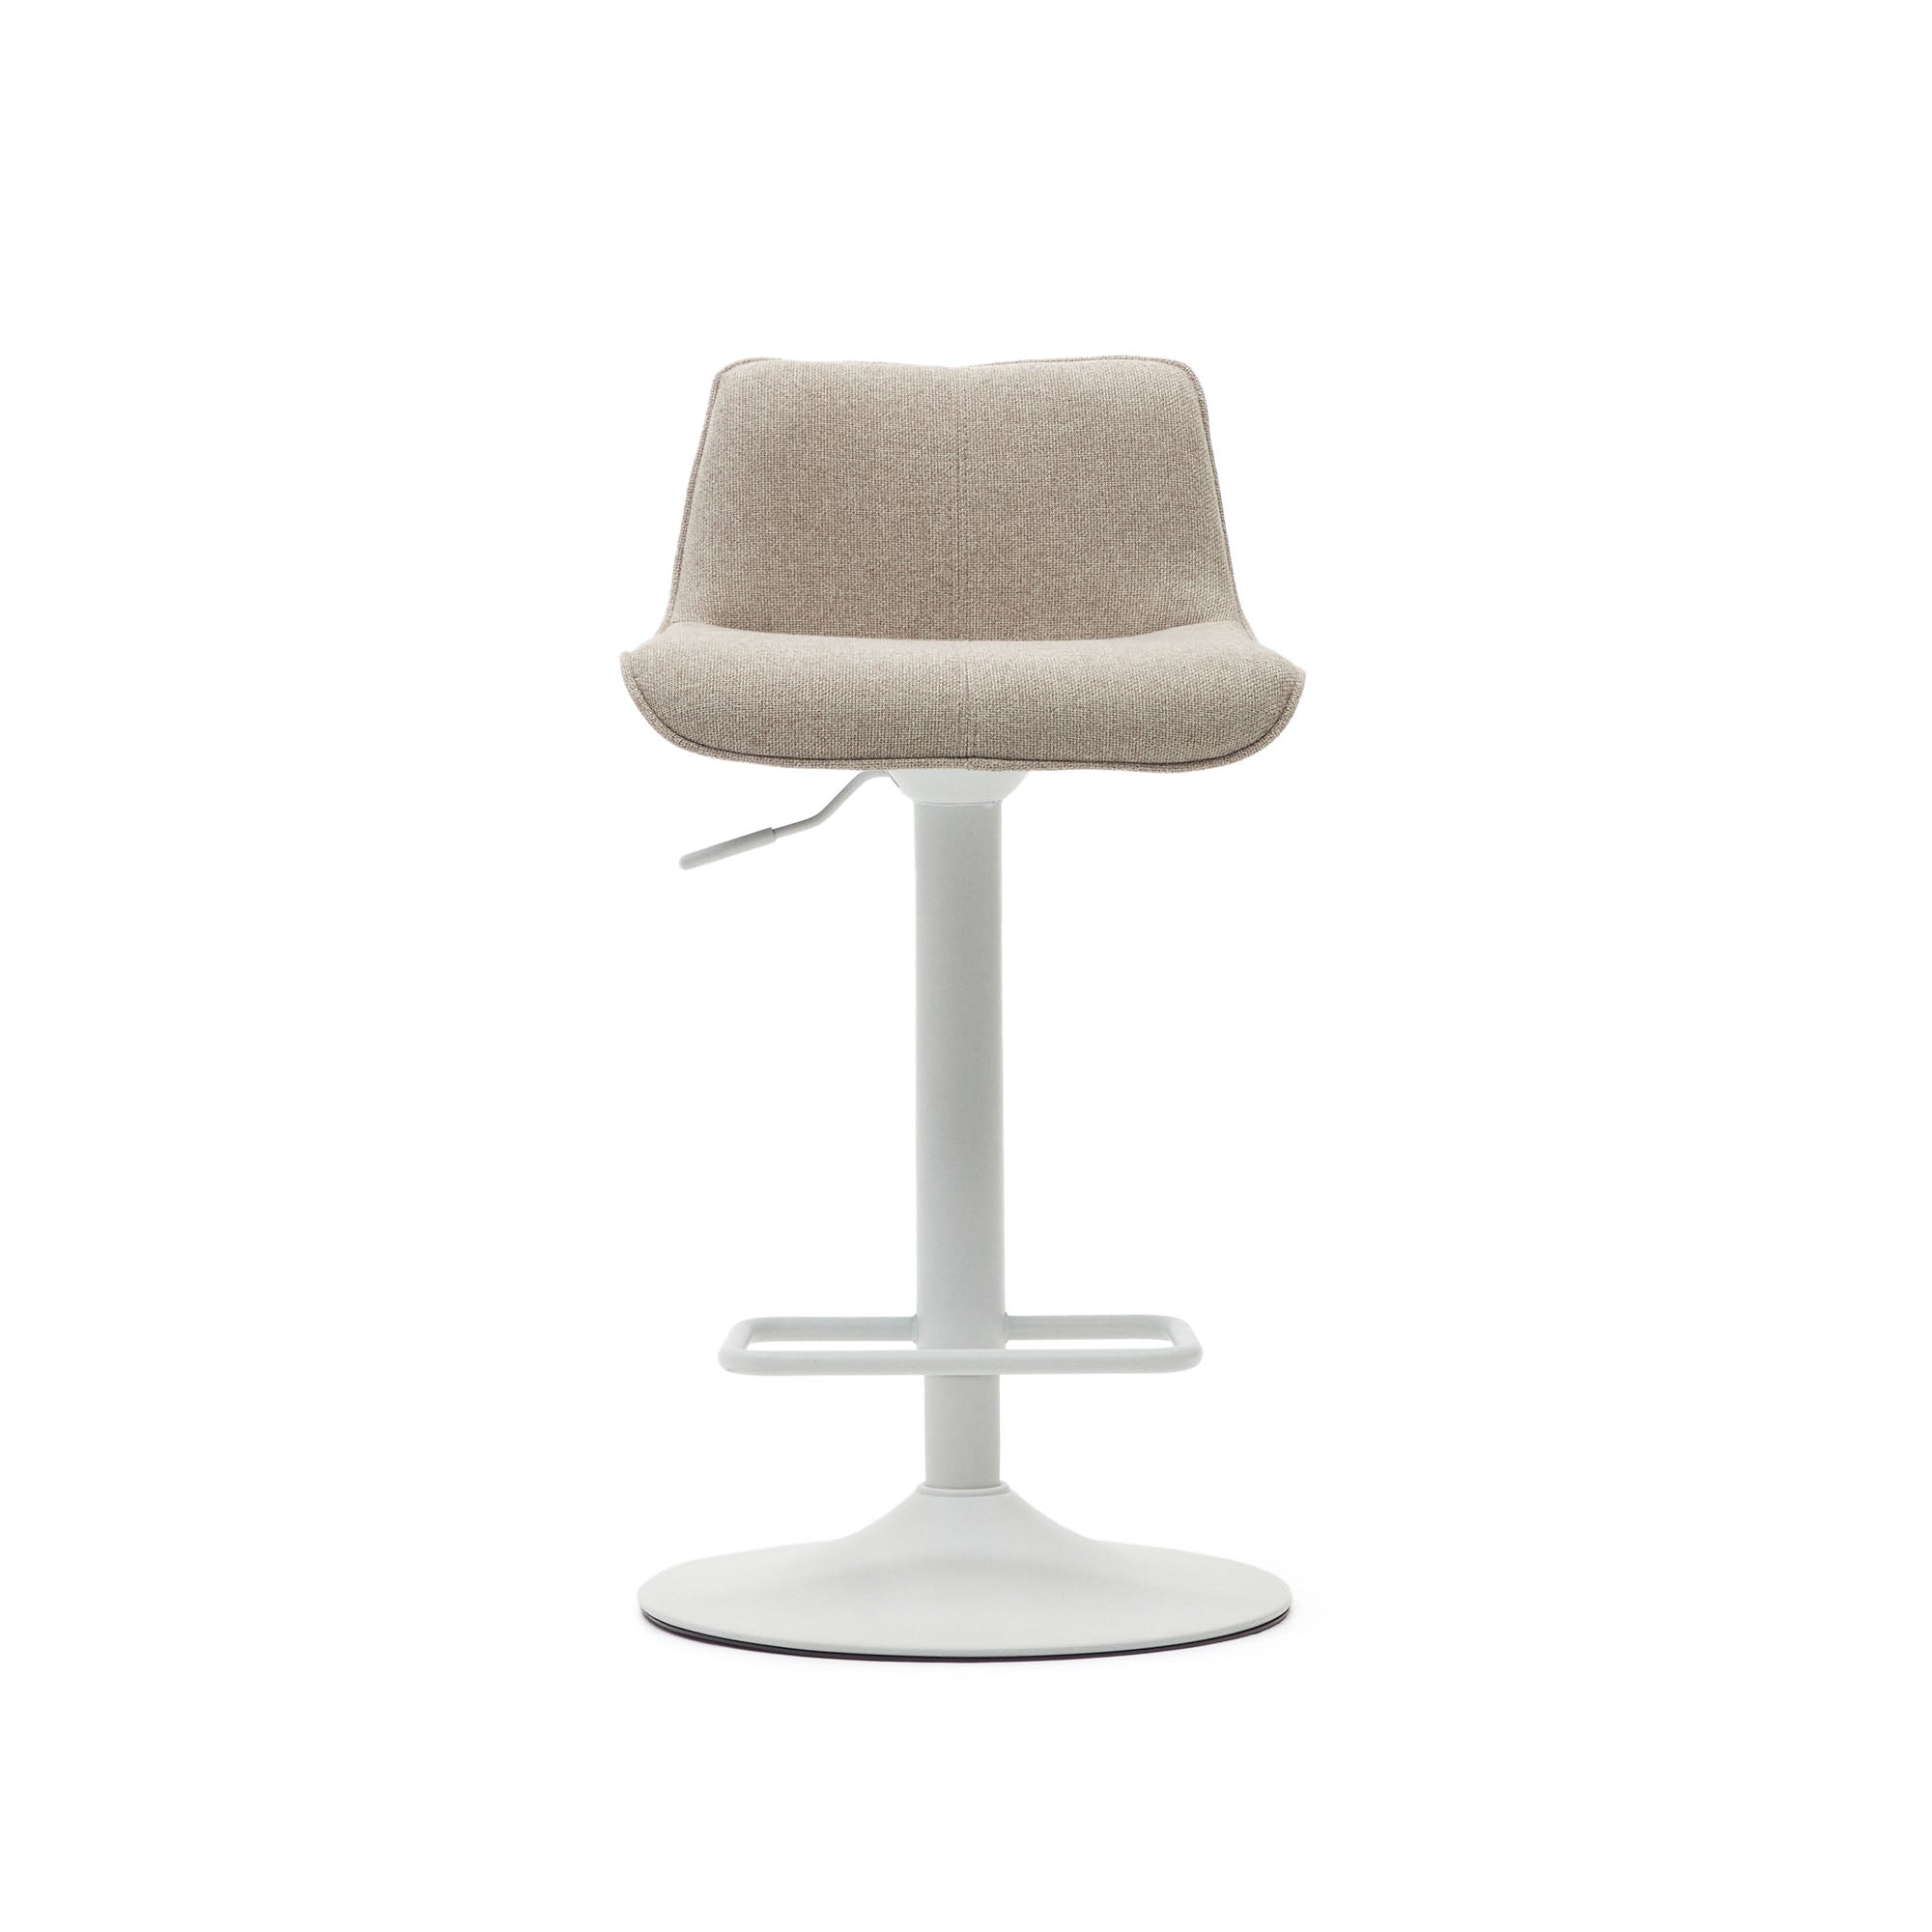 Zenda stool in beige chenille and matt white steel 81-102 cm